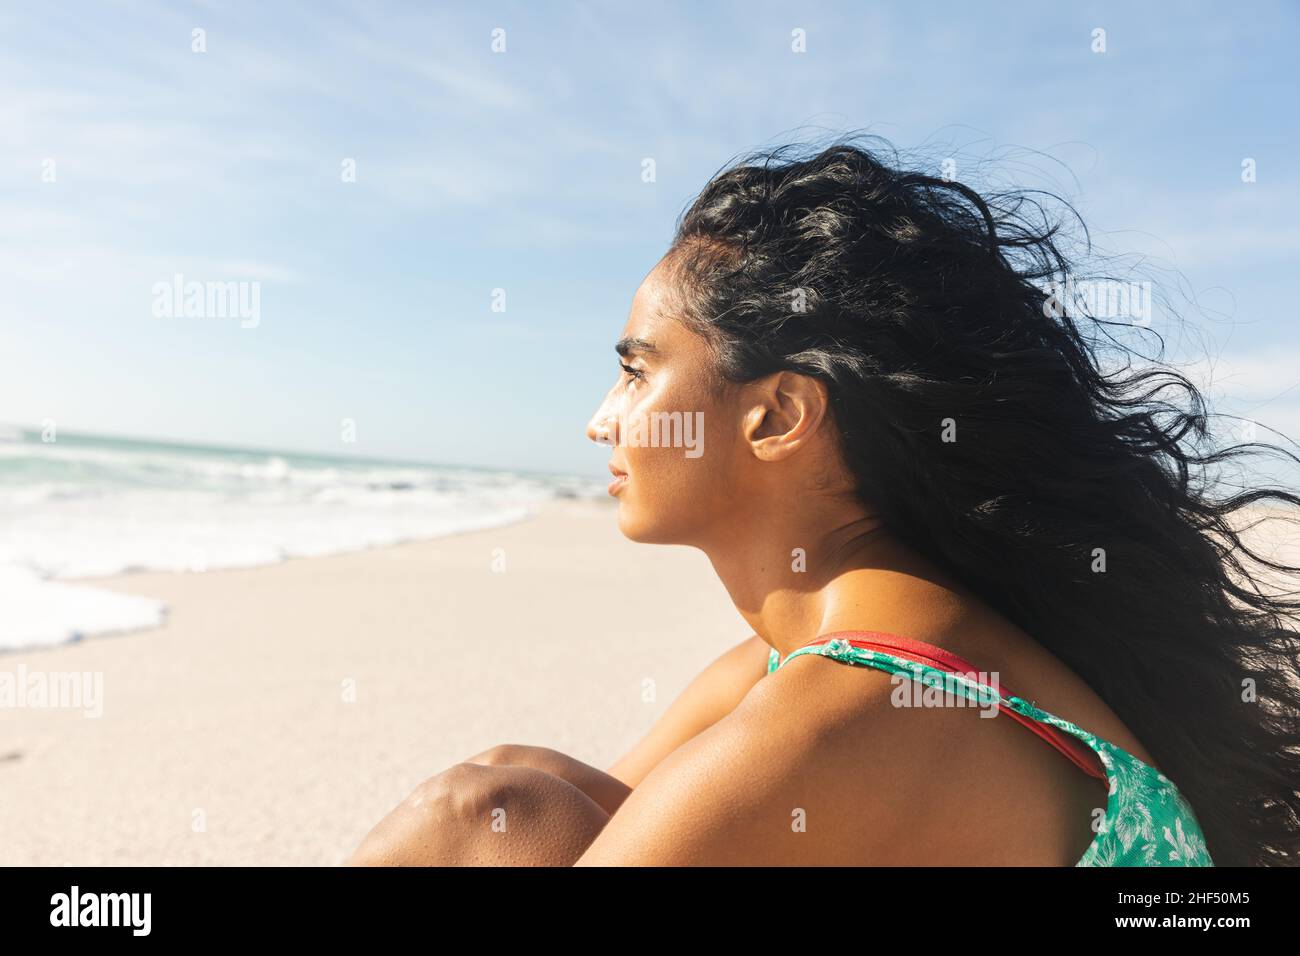 Vue latérale d'une jeune femme biraciale pensive avec de longs cheveux noirs donnant sur la plage Banque D'Images